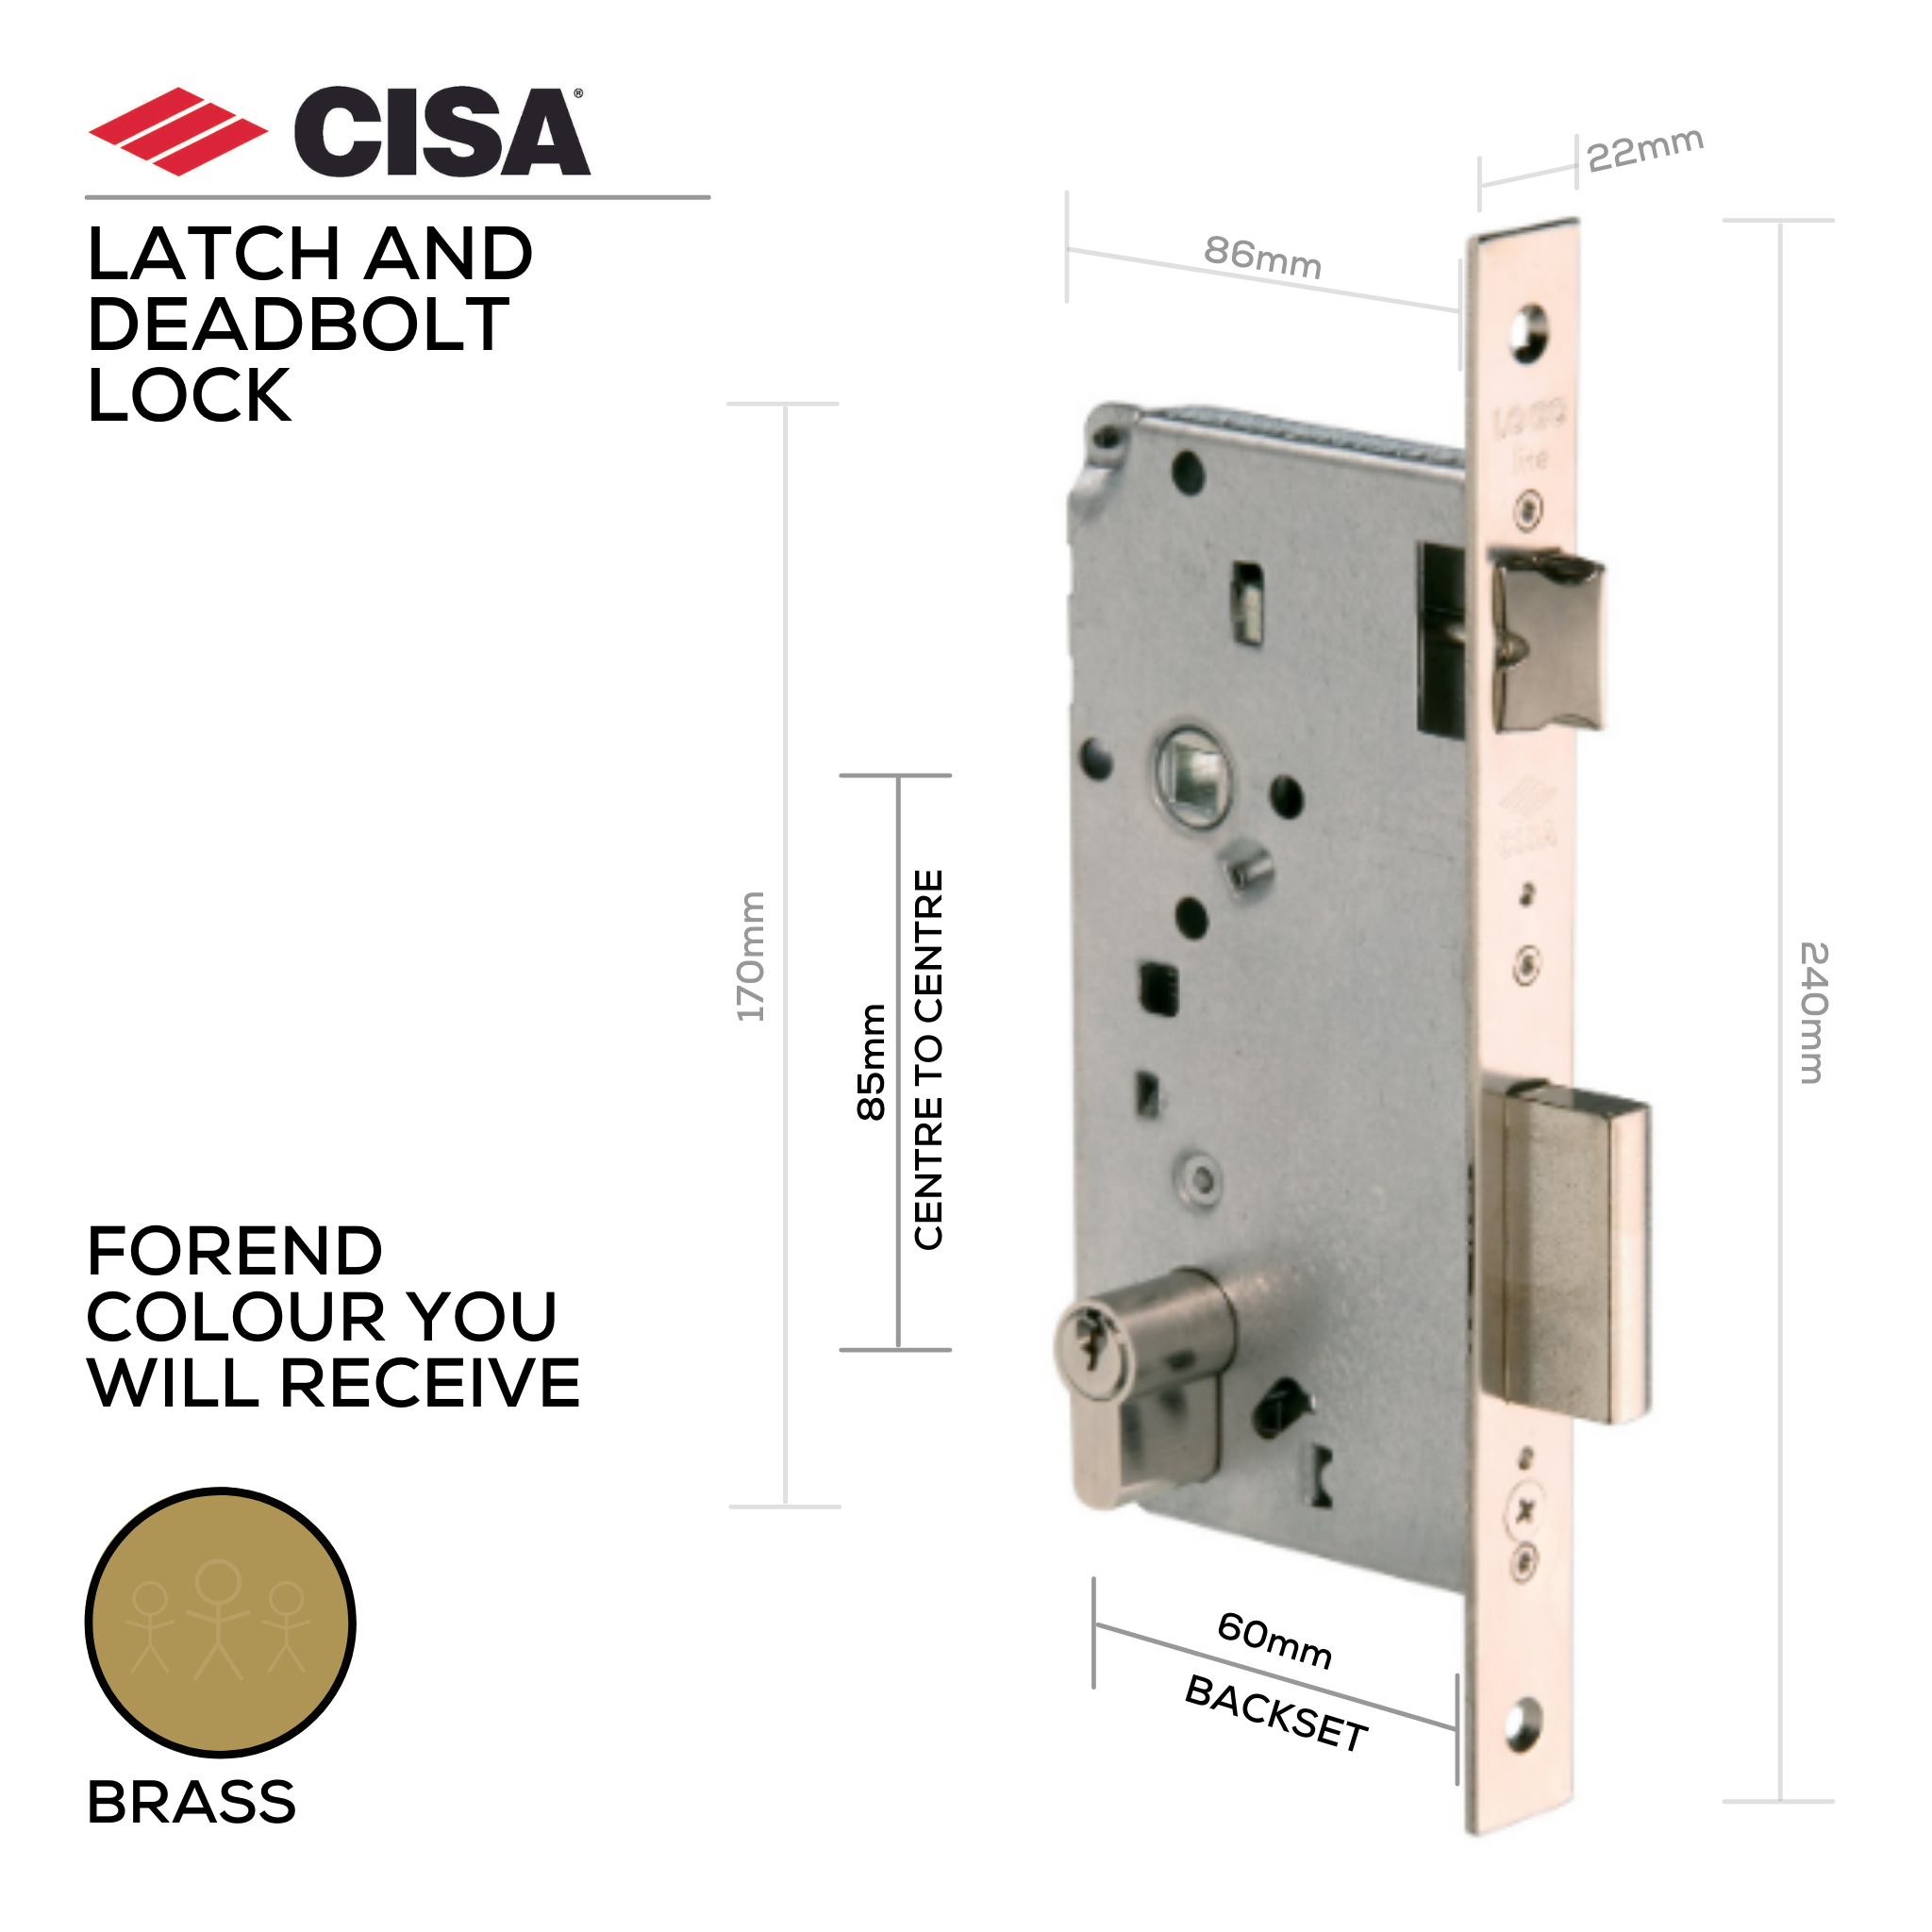 5C611-60-00, Latch & Deadbolt Lock, Euro Cylinder, Excluding Cylinder, 60mm (Backset), 85mm (ctc), Brass, CISA